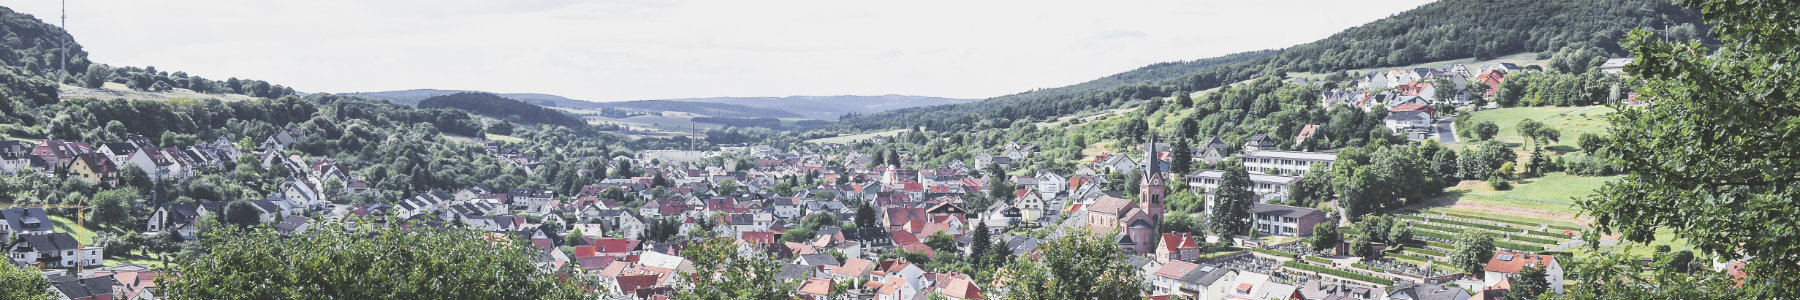 Ferienspiele 2023 – Gemeinde Waldaschaff - Reizvoll, Naturverbunden, Erlebnisreich